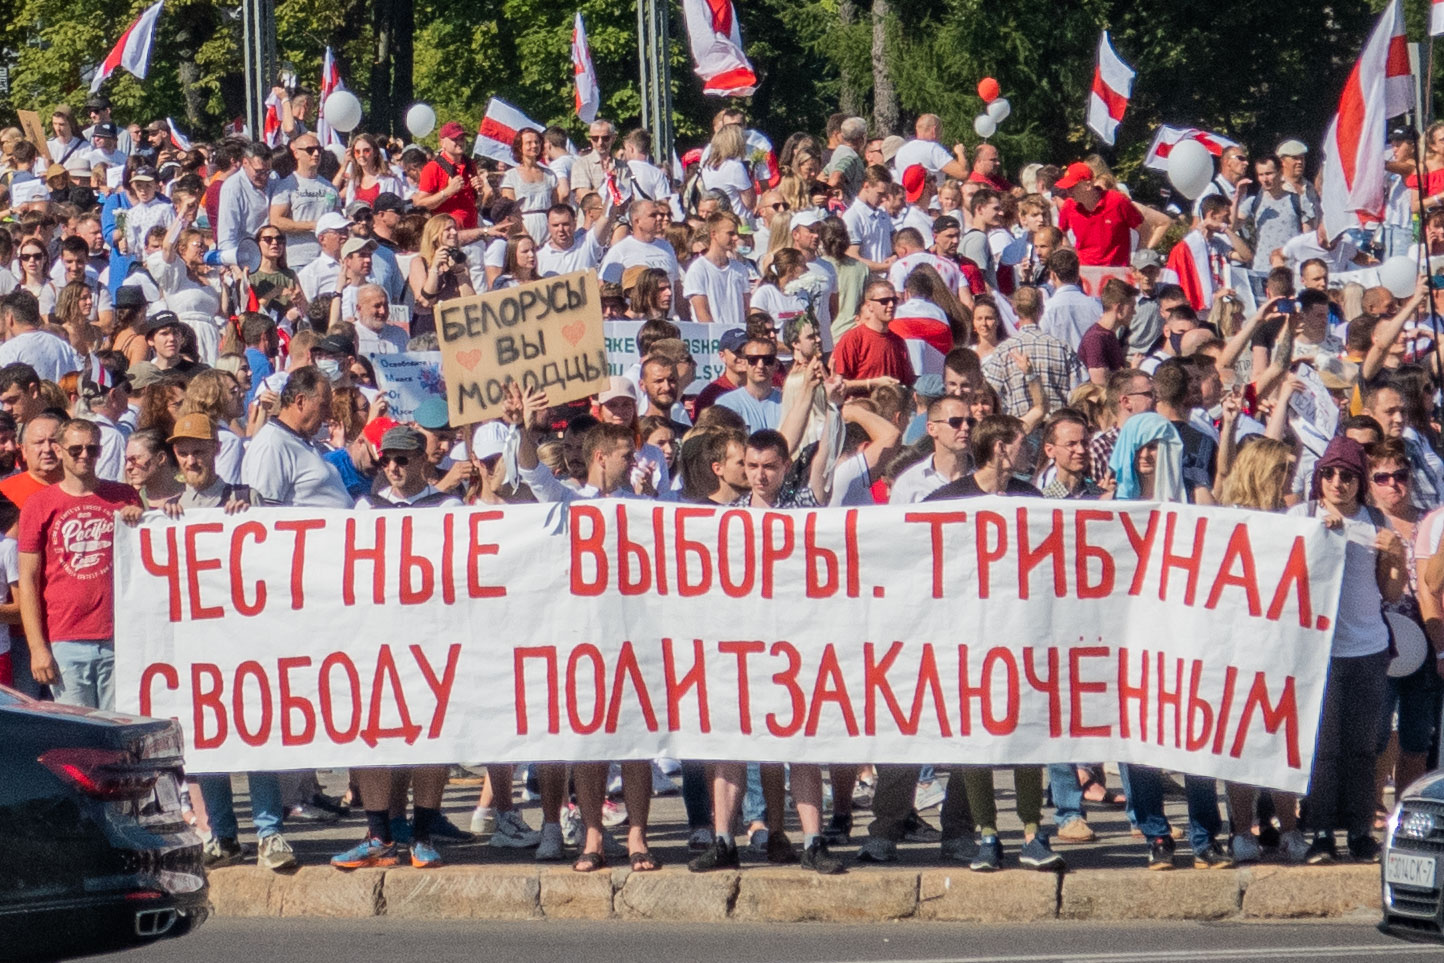 Protesters in Minsk